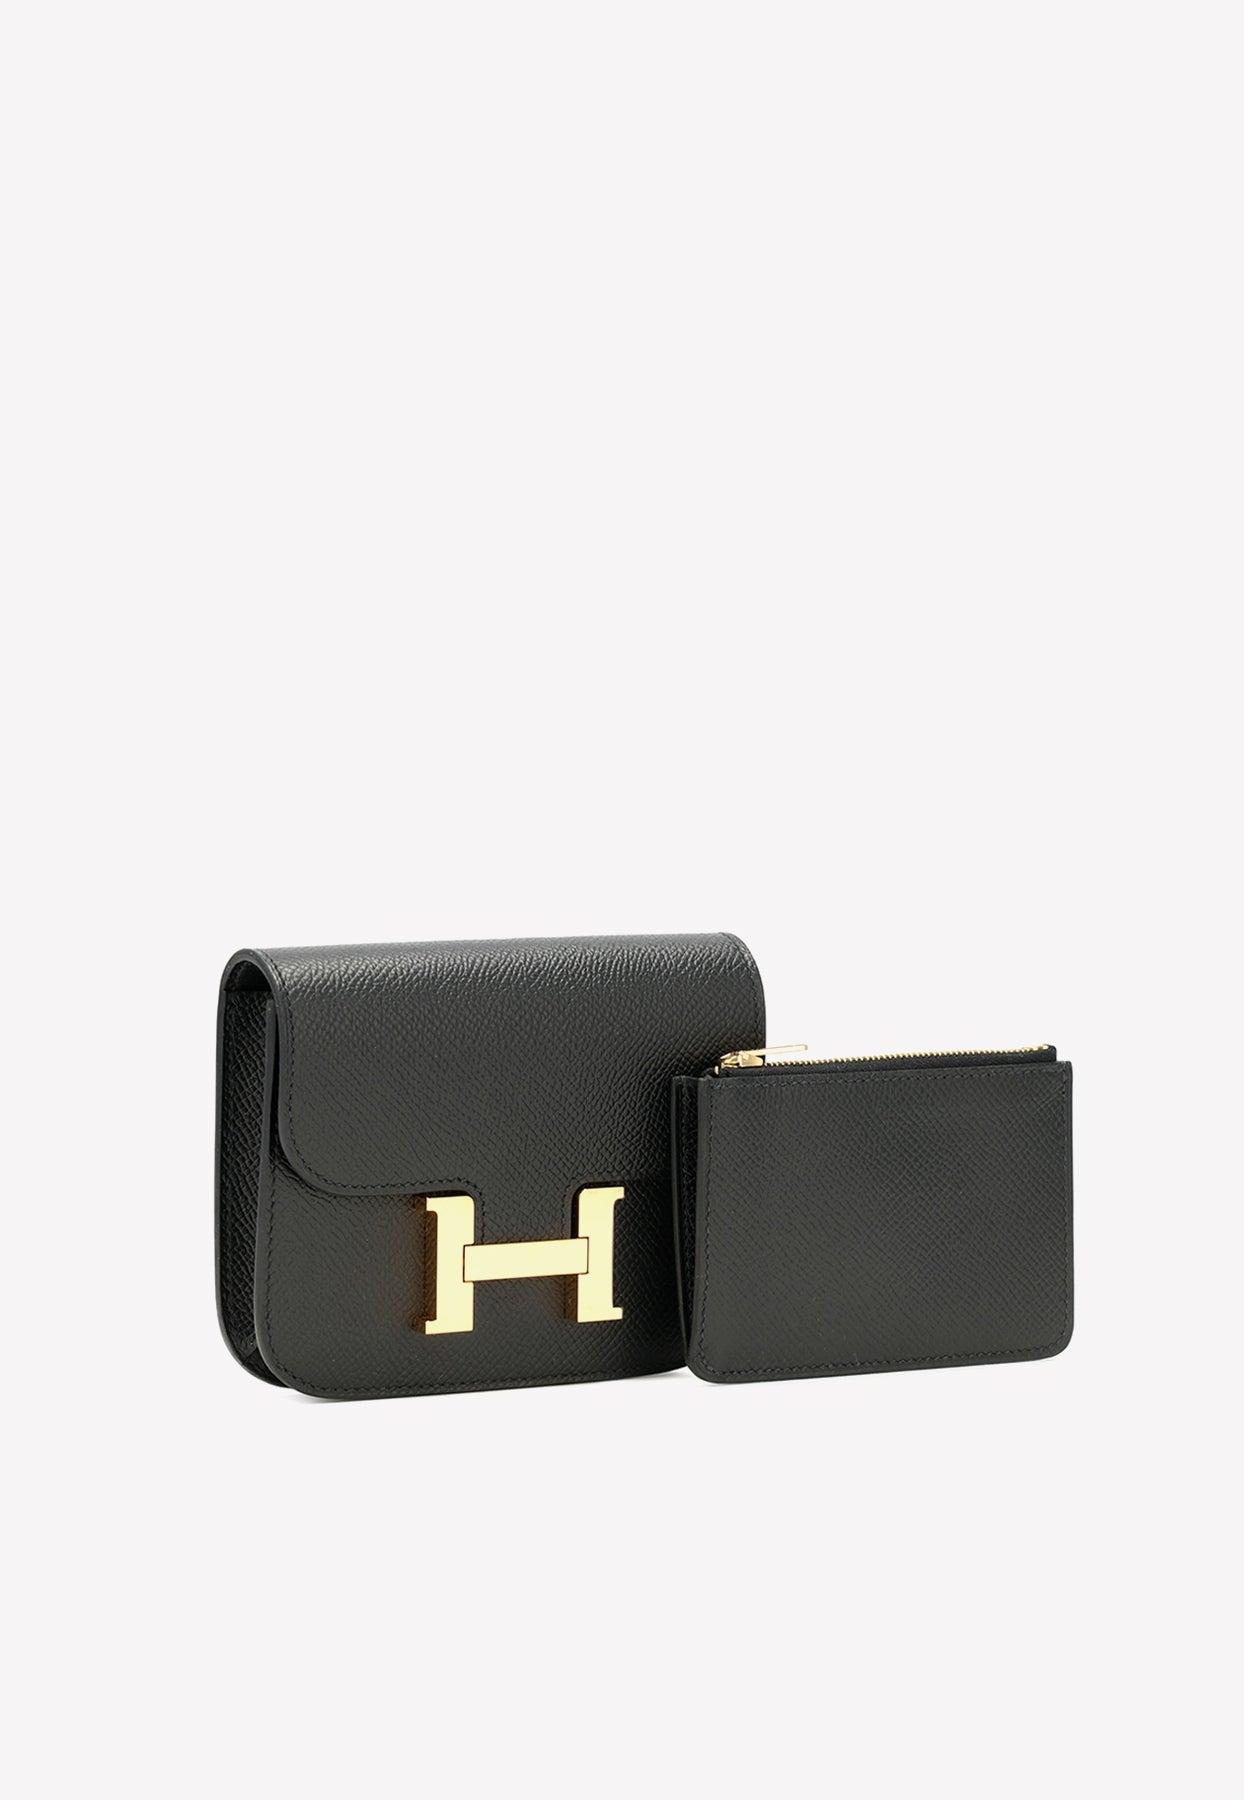 Hermes Constance 24 Black Epsom leather Rose gold hardware